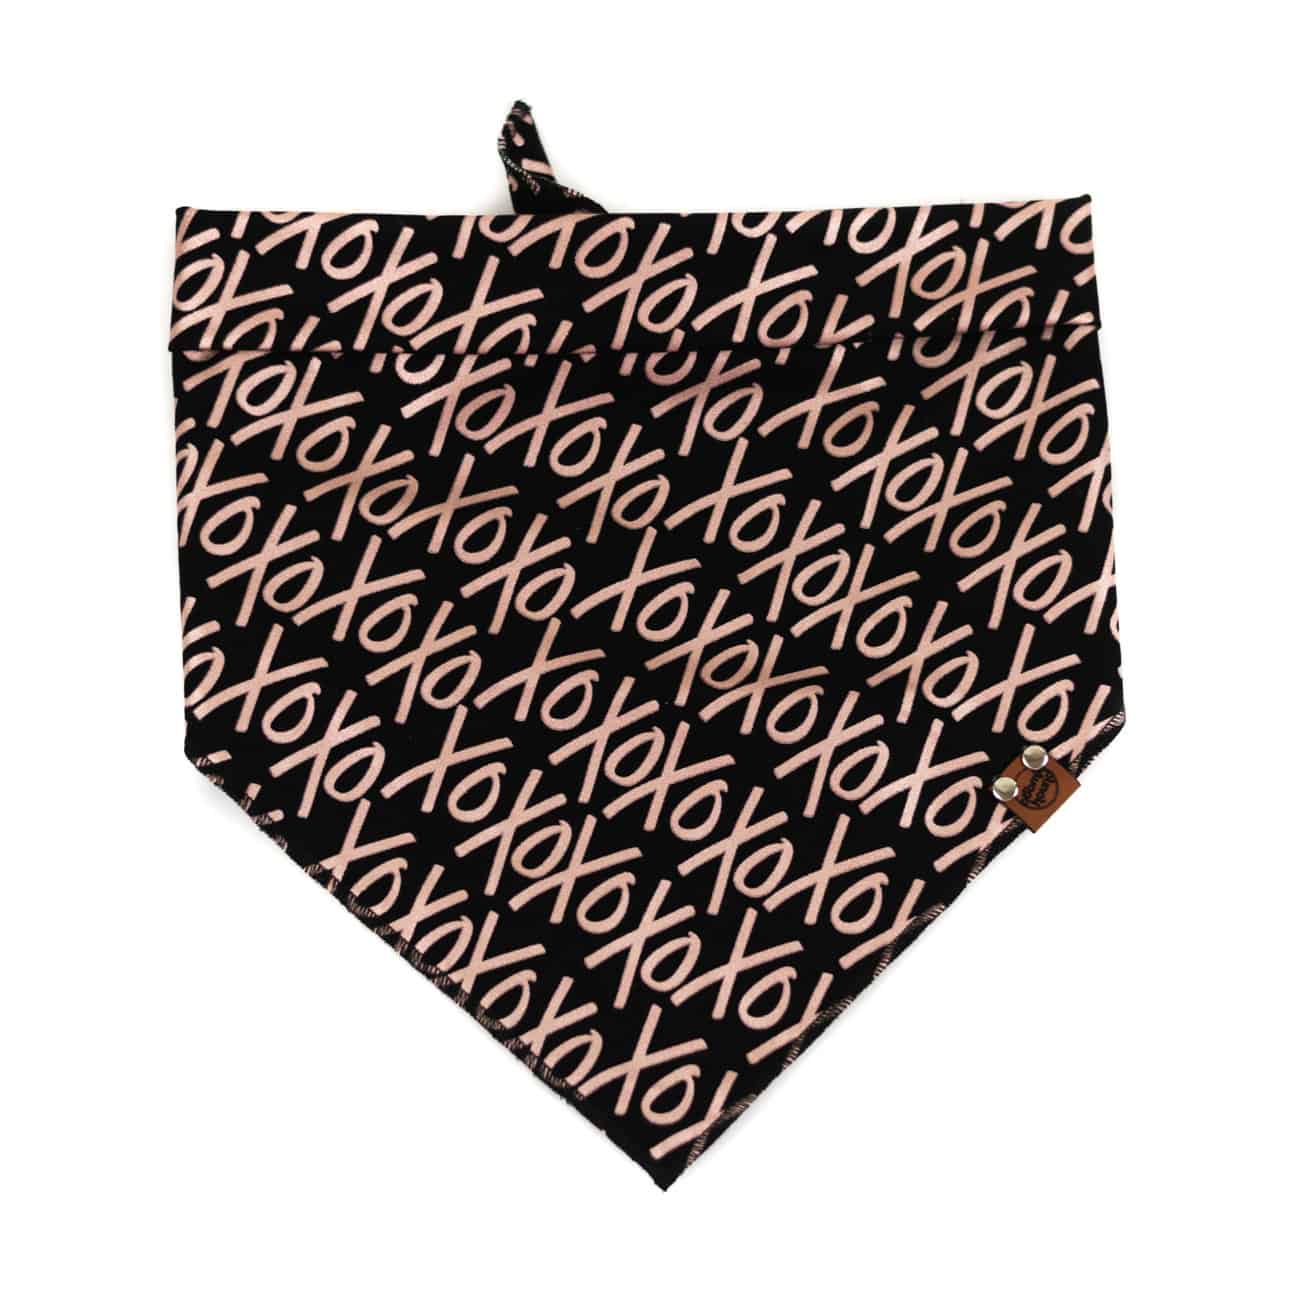 xoxo rose gold pattern on black dog bandana